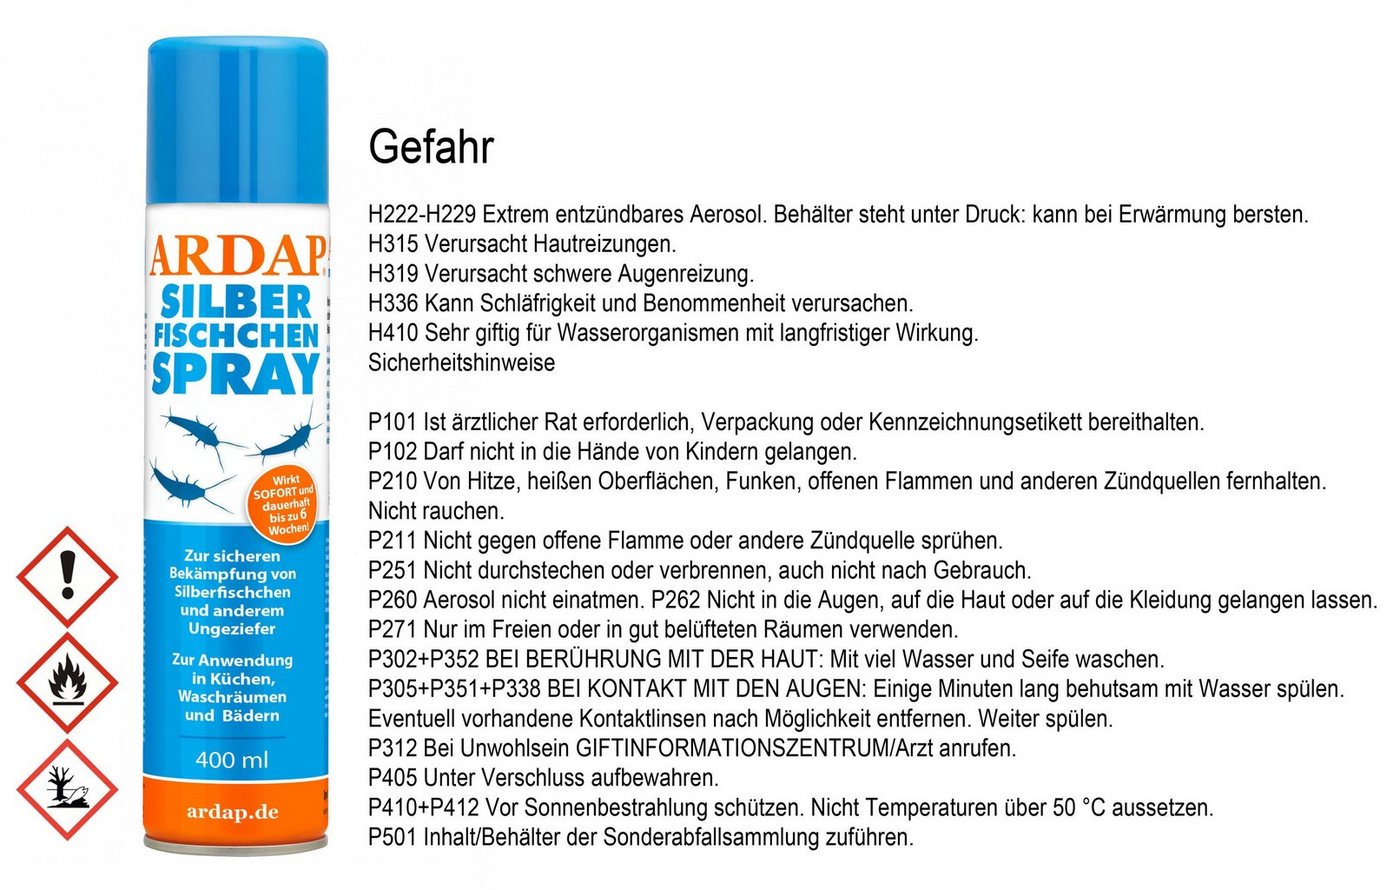 Ardap Insektenspray ARDAP® Silberfischchen Spray Insektizid 400ml von Ardap